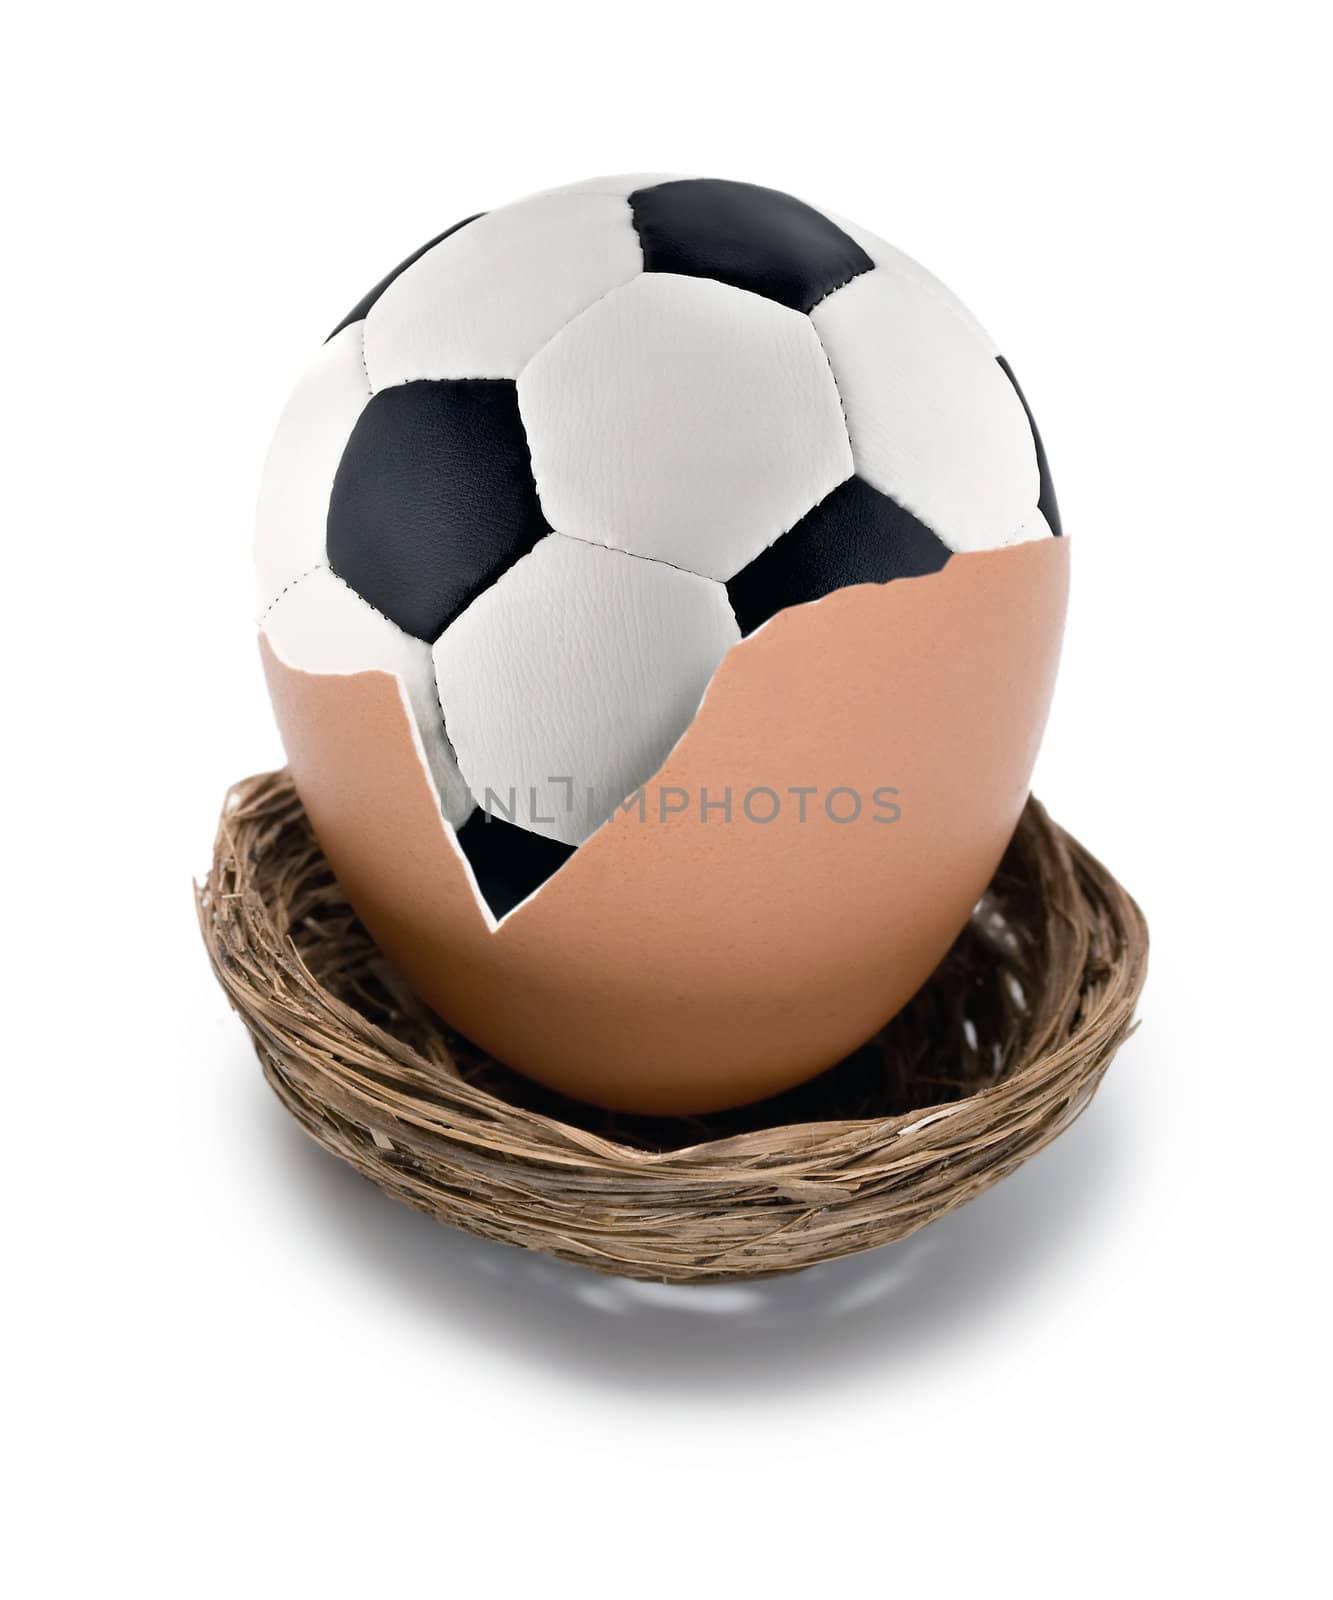 soccer ball on eggs in nest isolated on white